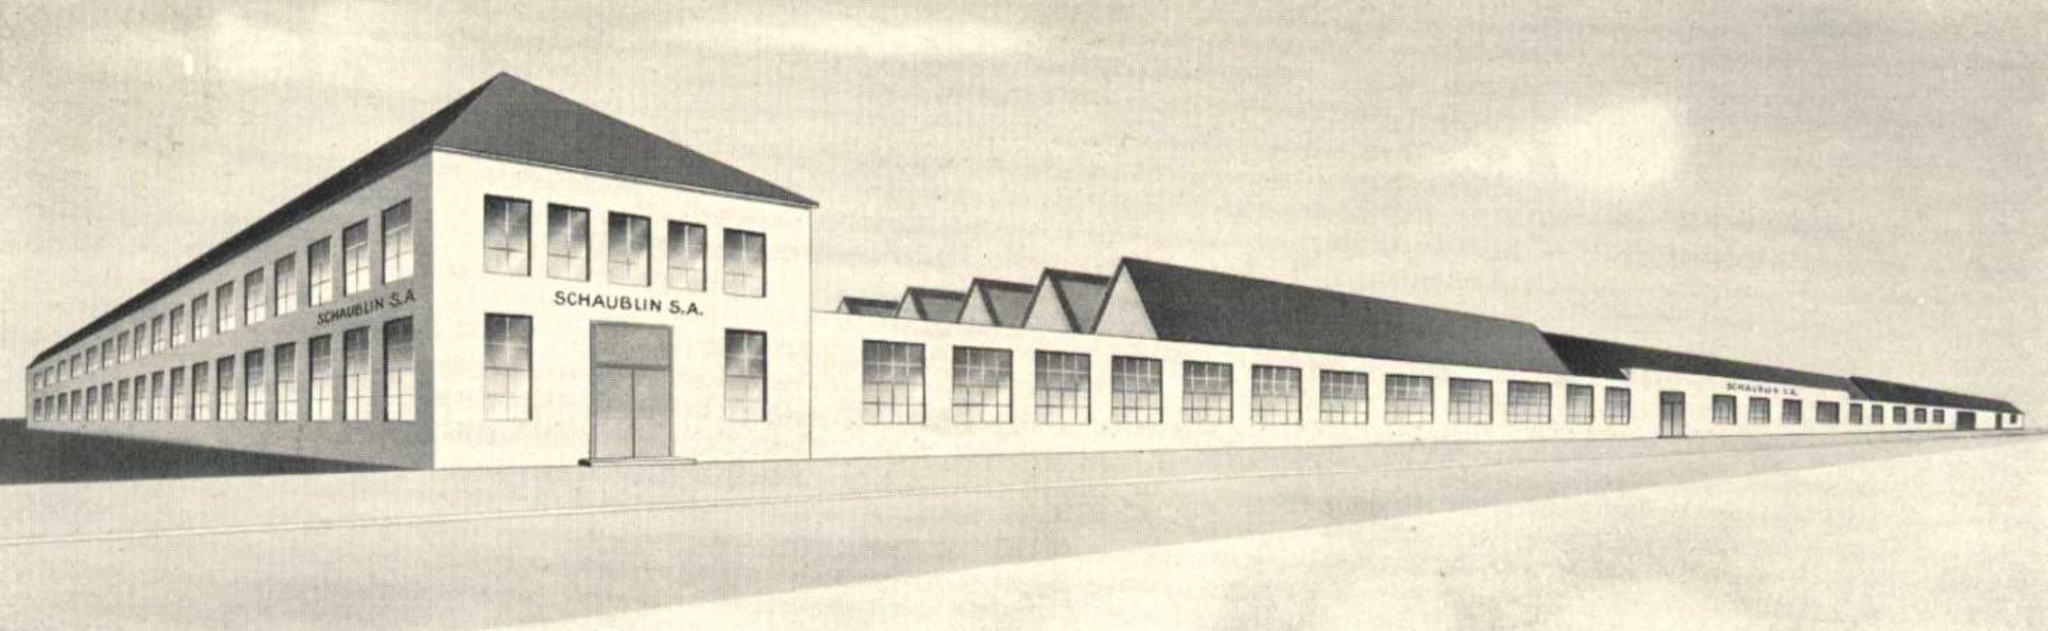 Early Schaublin factory in Bevilard, in Jura region, Switzerland